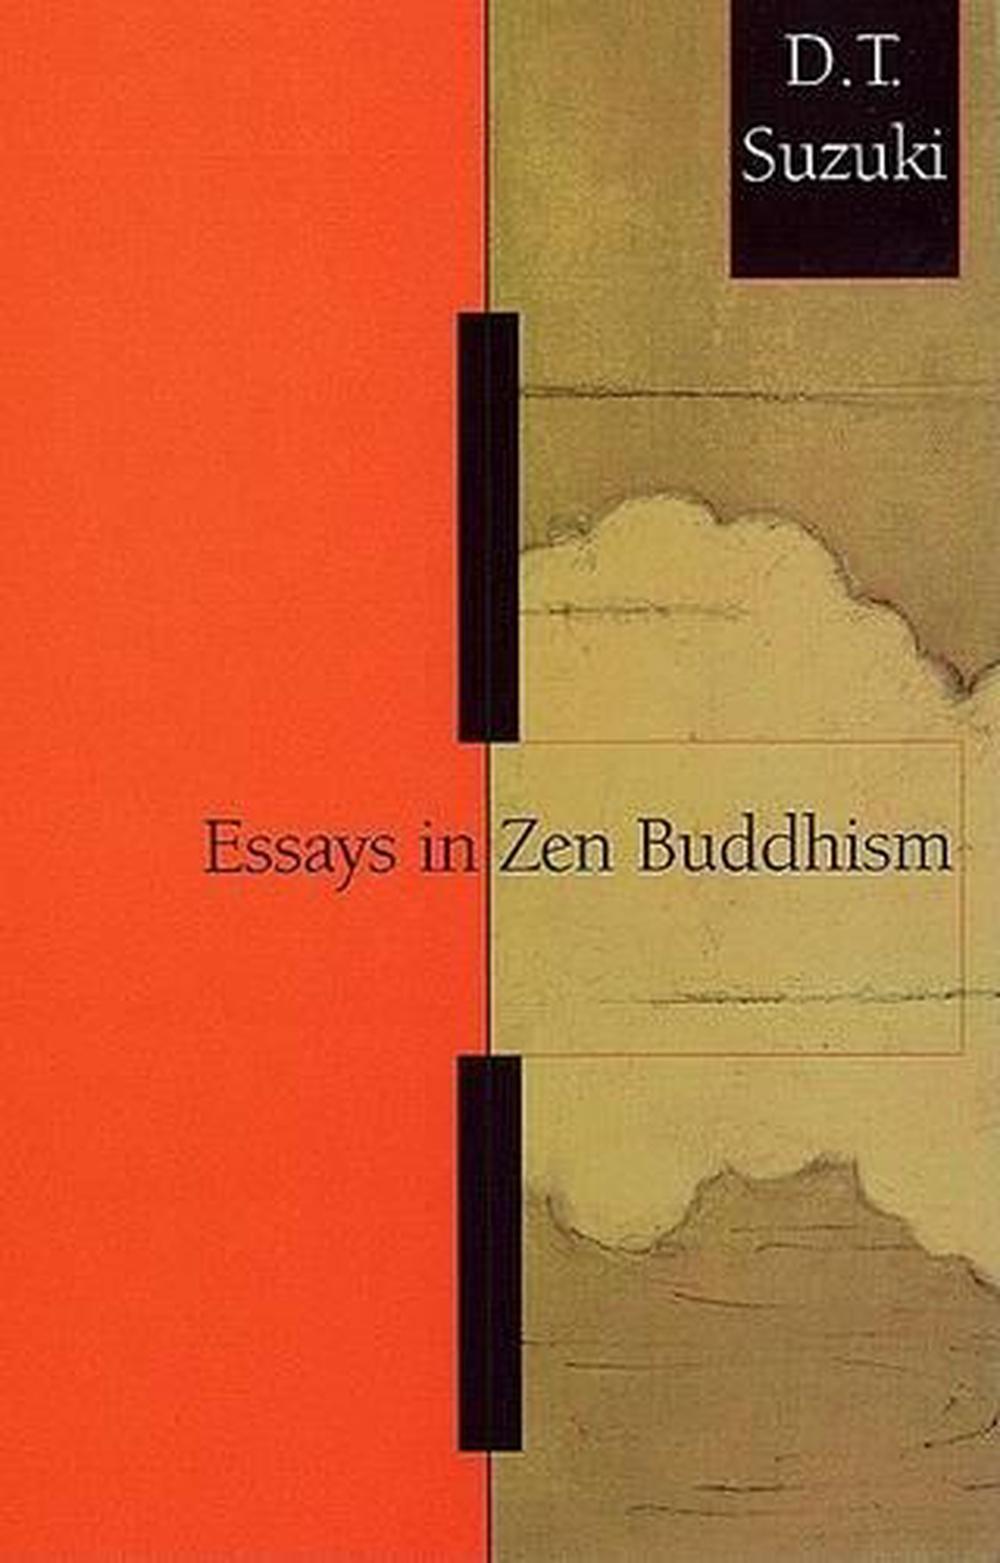 essays in zen buddhism second series